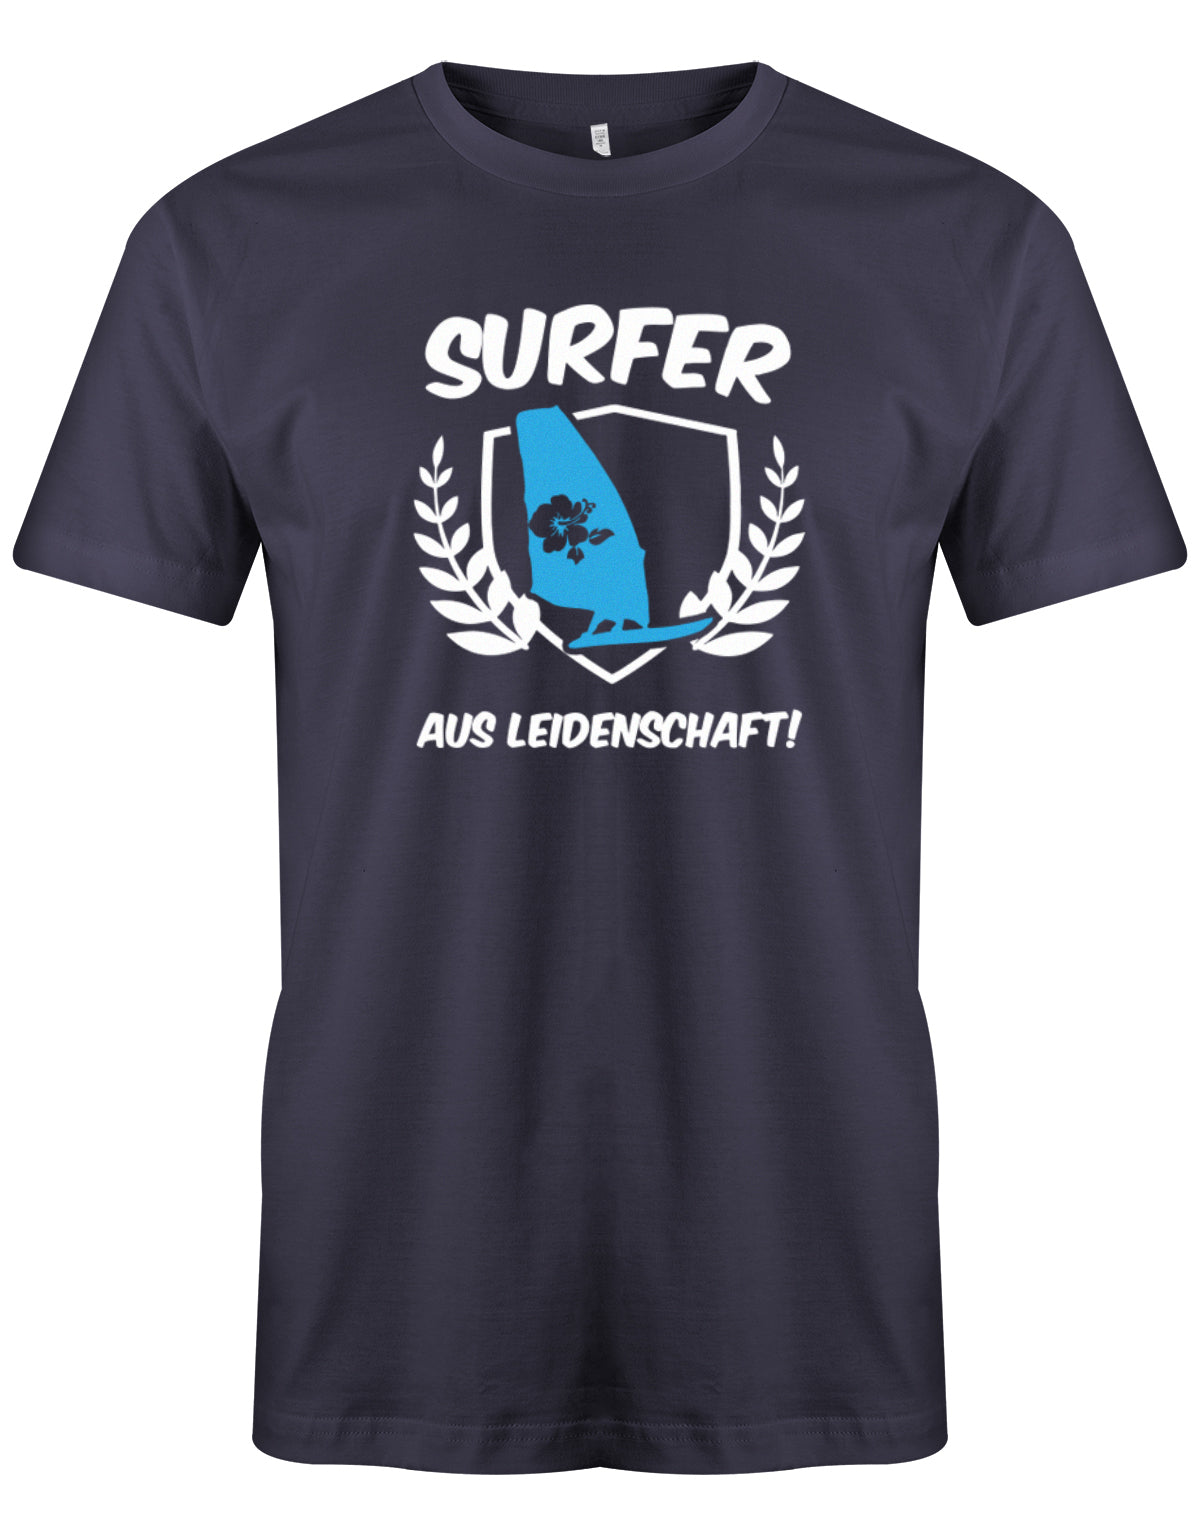 Das lustige Surfer t-shirt bedruckt mit 